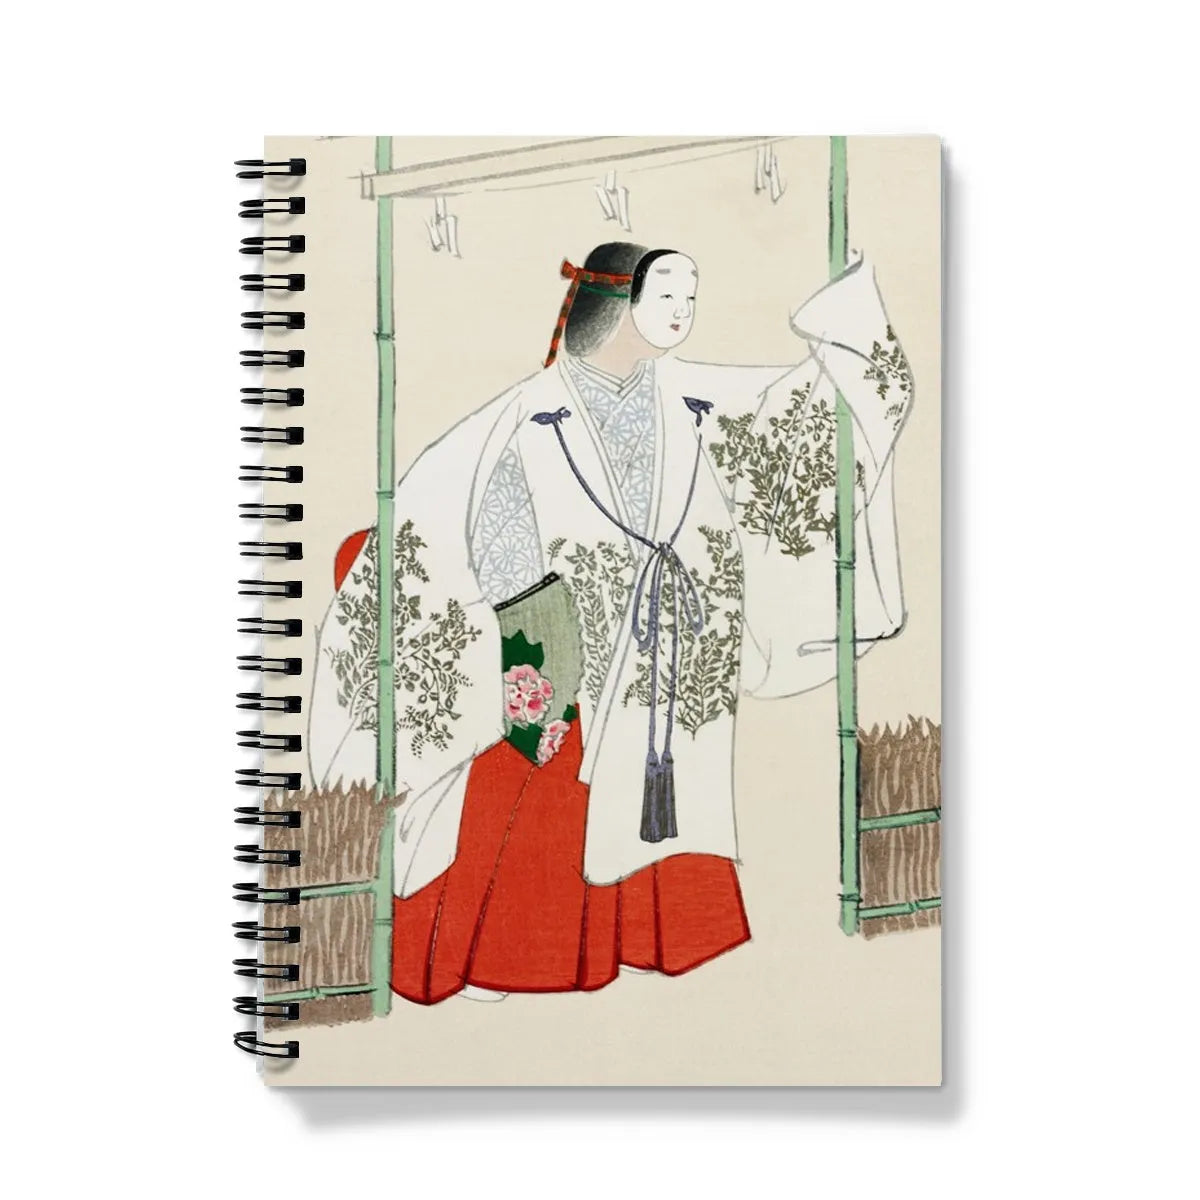 Masked Man By Kamisaka Sekka Notebook - A5 / Graph - Notebooks & Notepads - Aesthetic Art